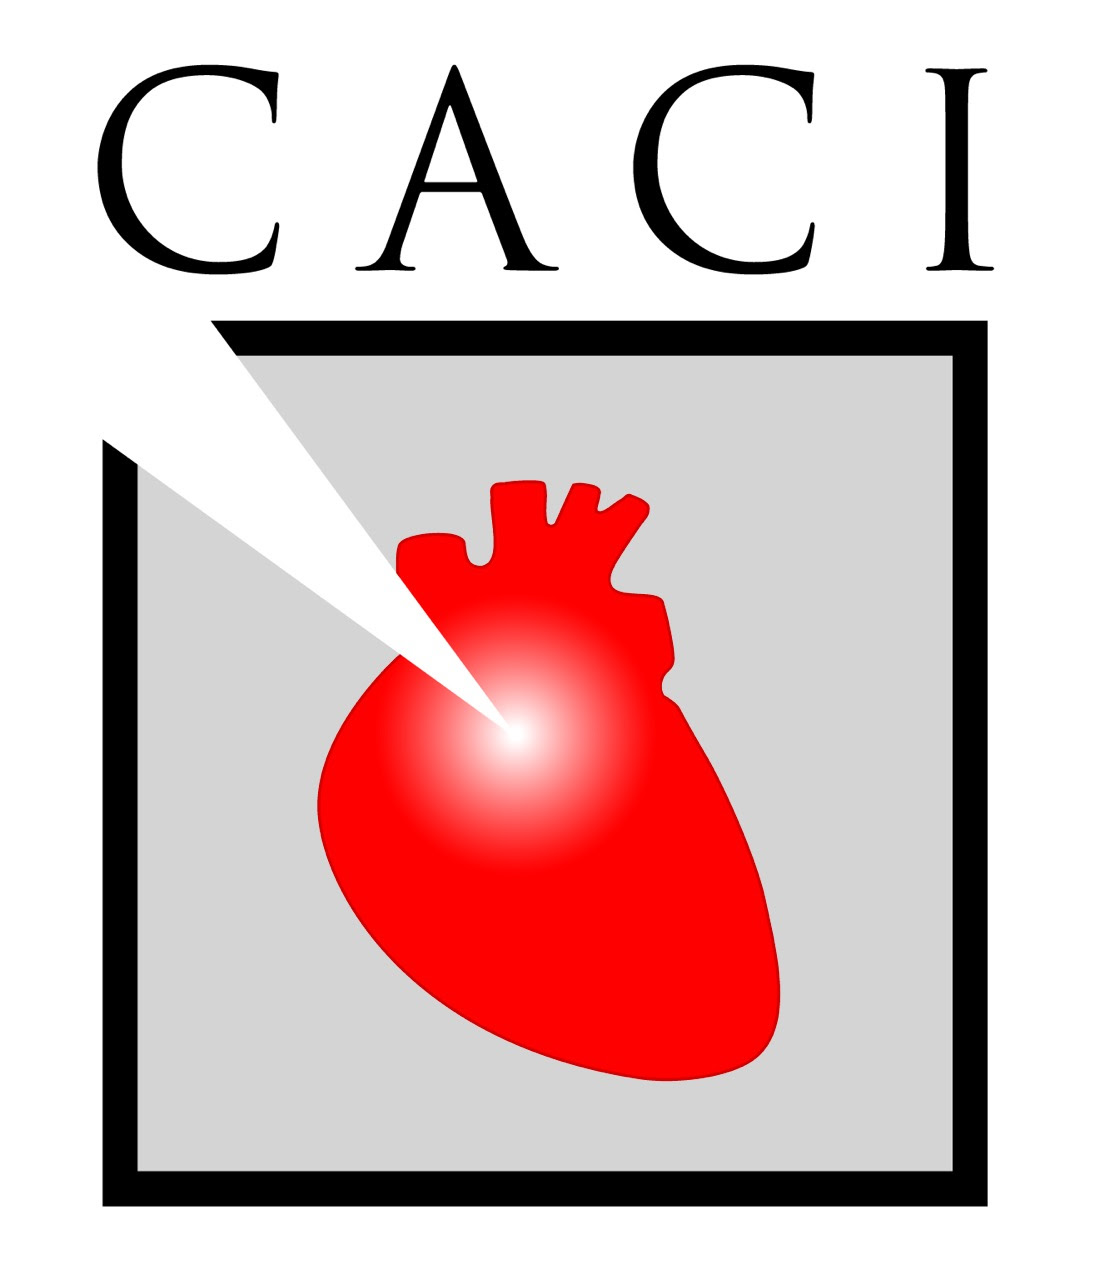 Mayor acceso a prestaciones de calidad: objetivo de los cardioangiólogos intervencionistas